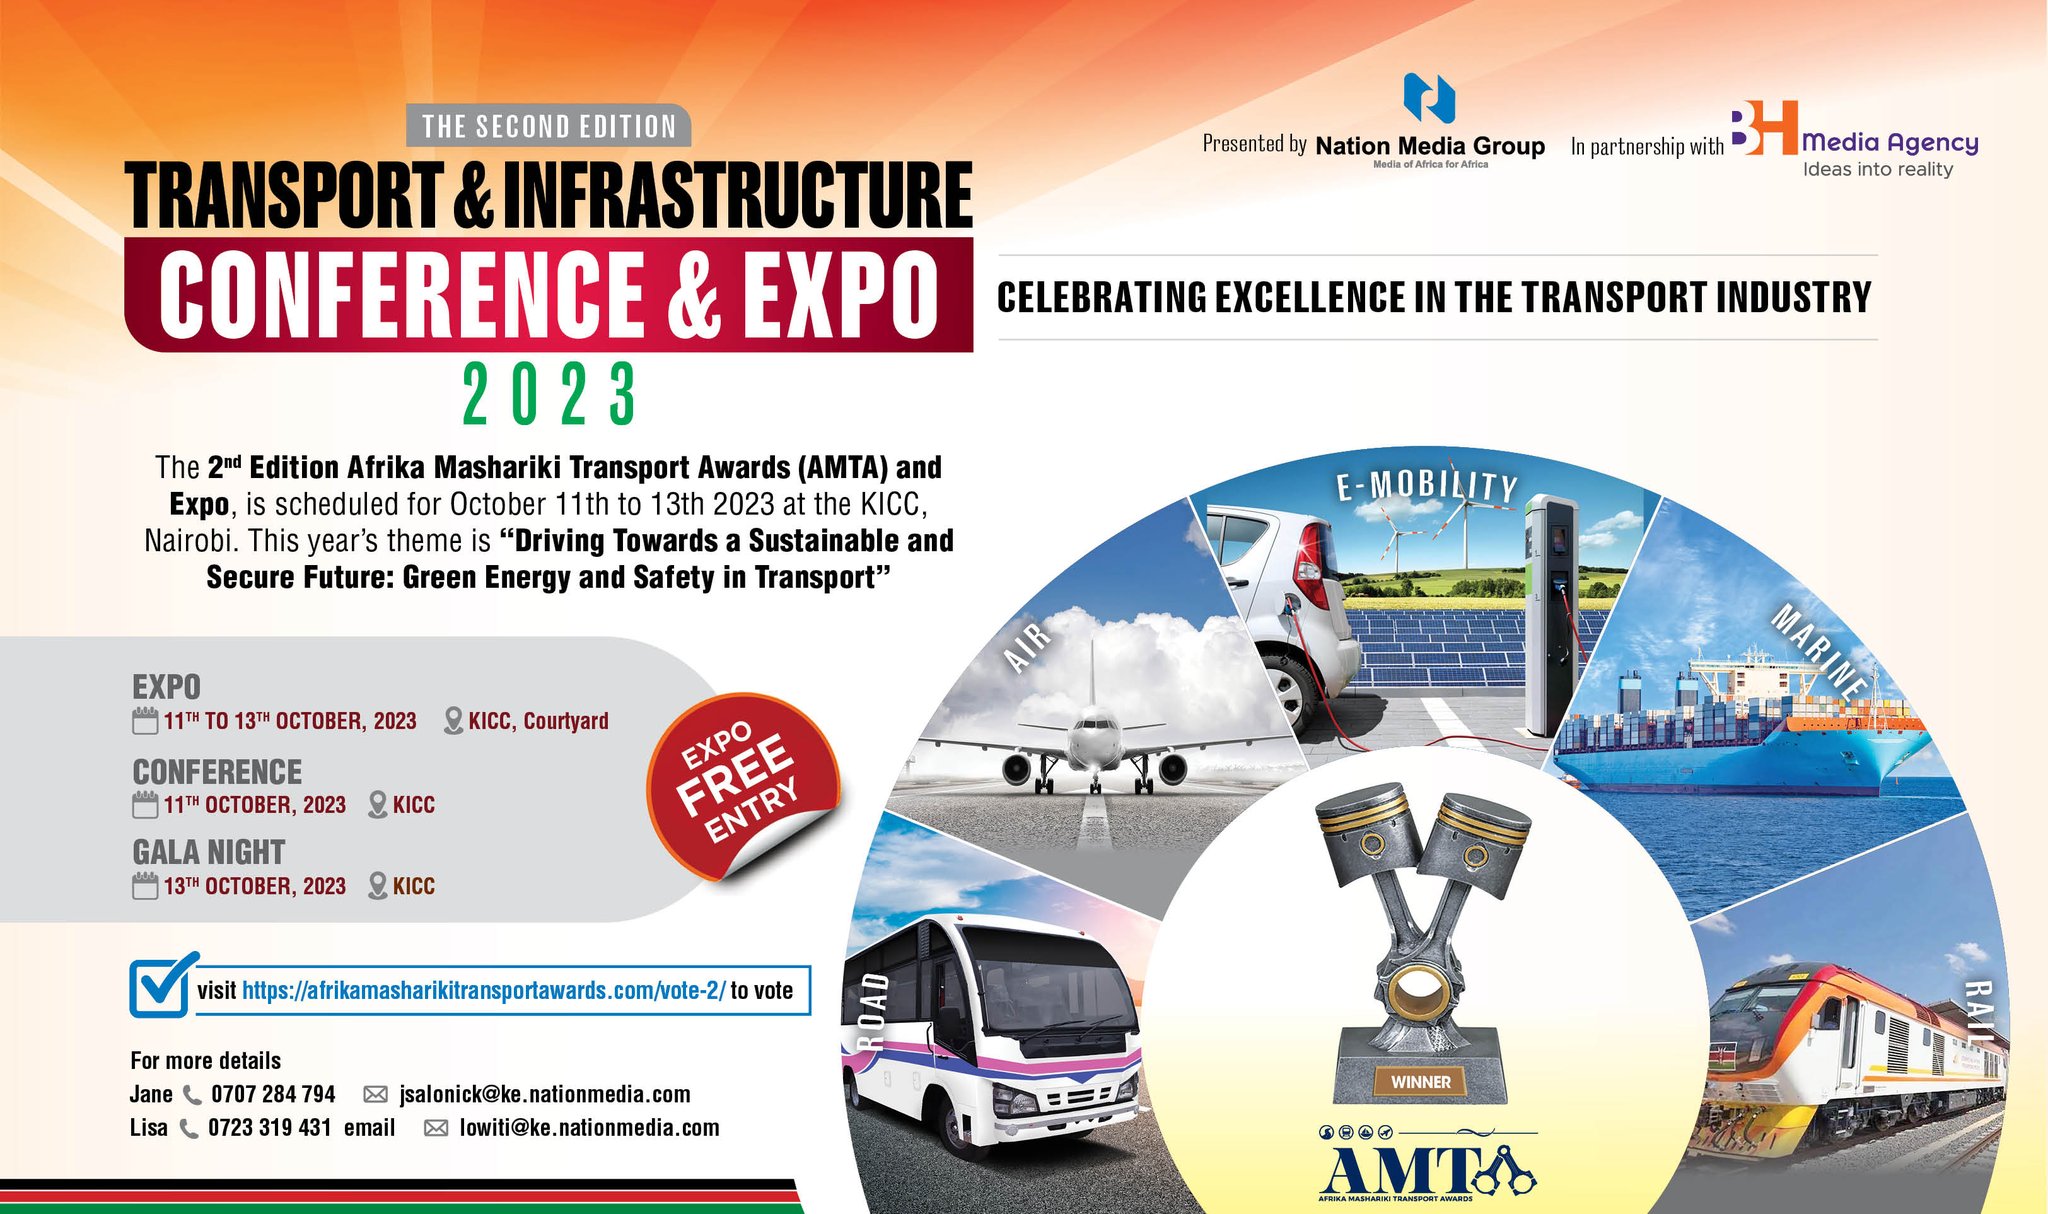 Afrika Mashariki Transport Awards (AMTA) & Expo